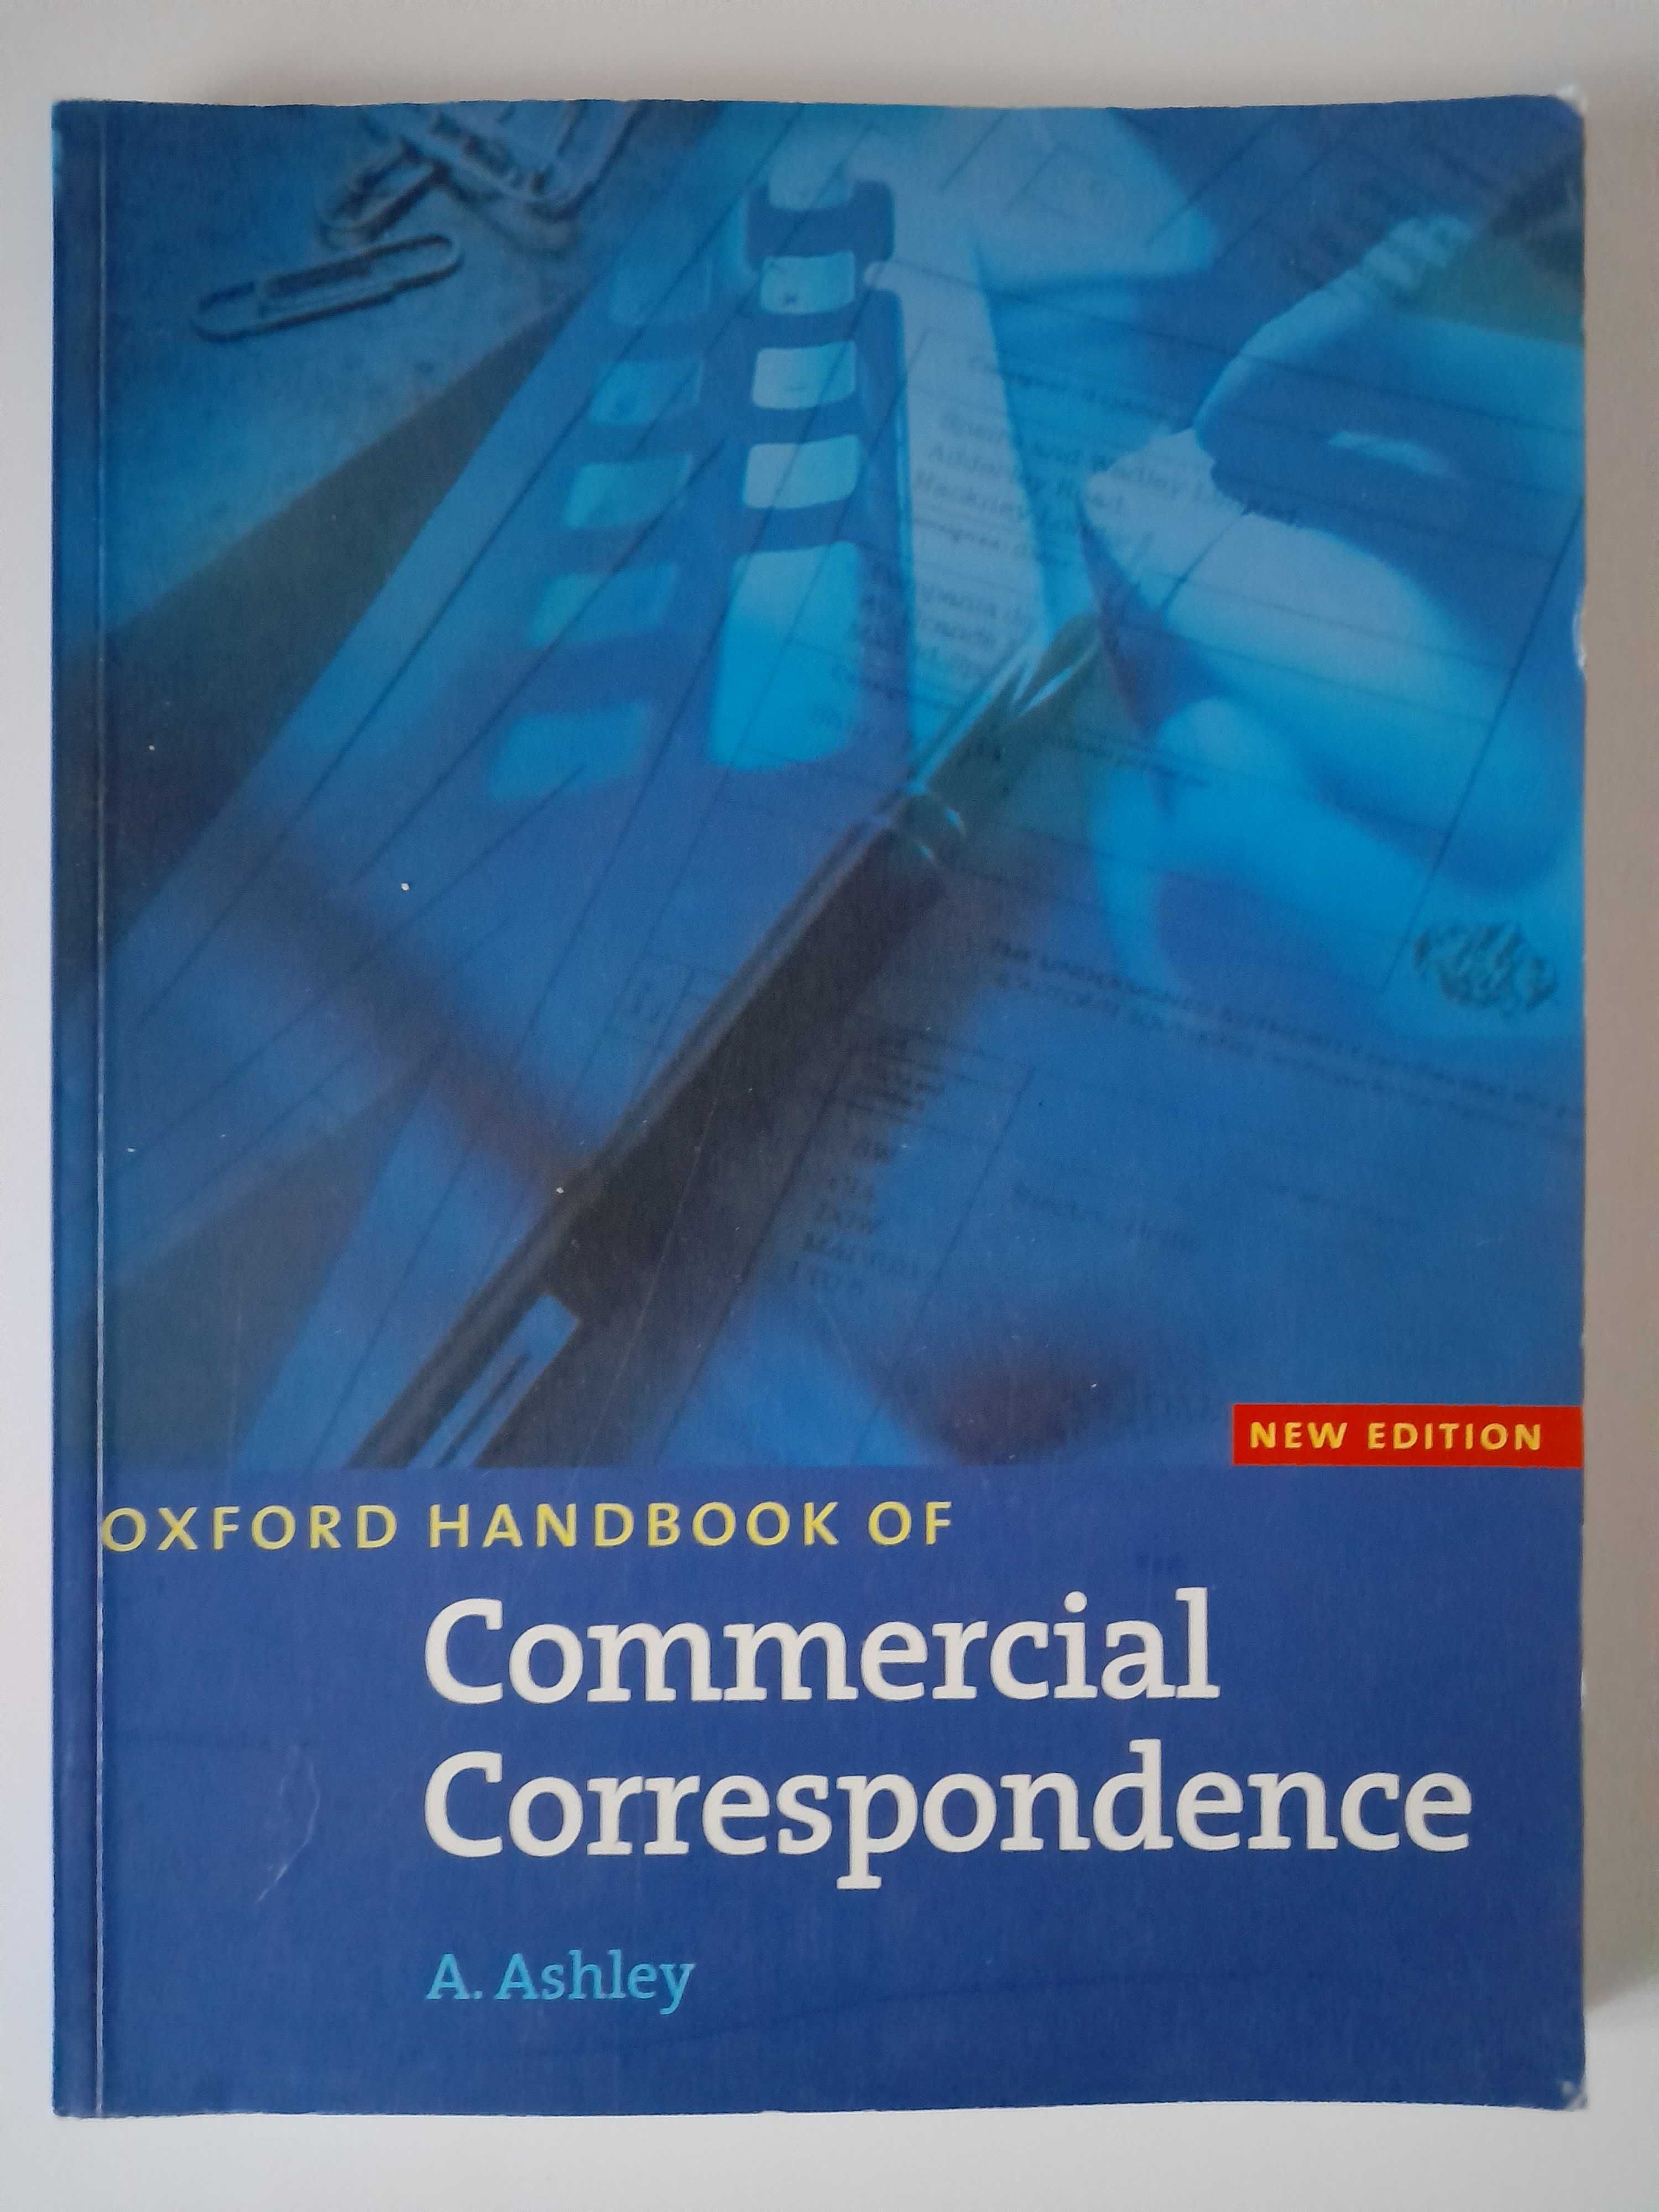 Oxford Handbook of Commercial Correspondence A. Ashley